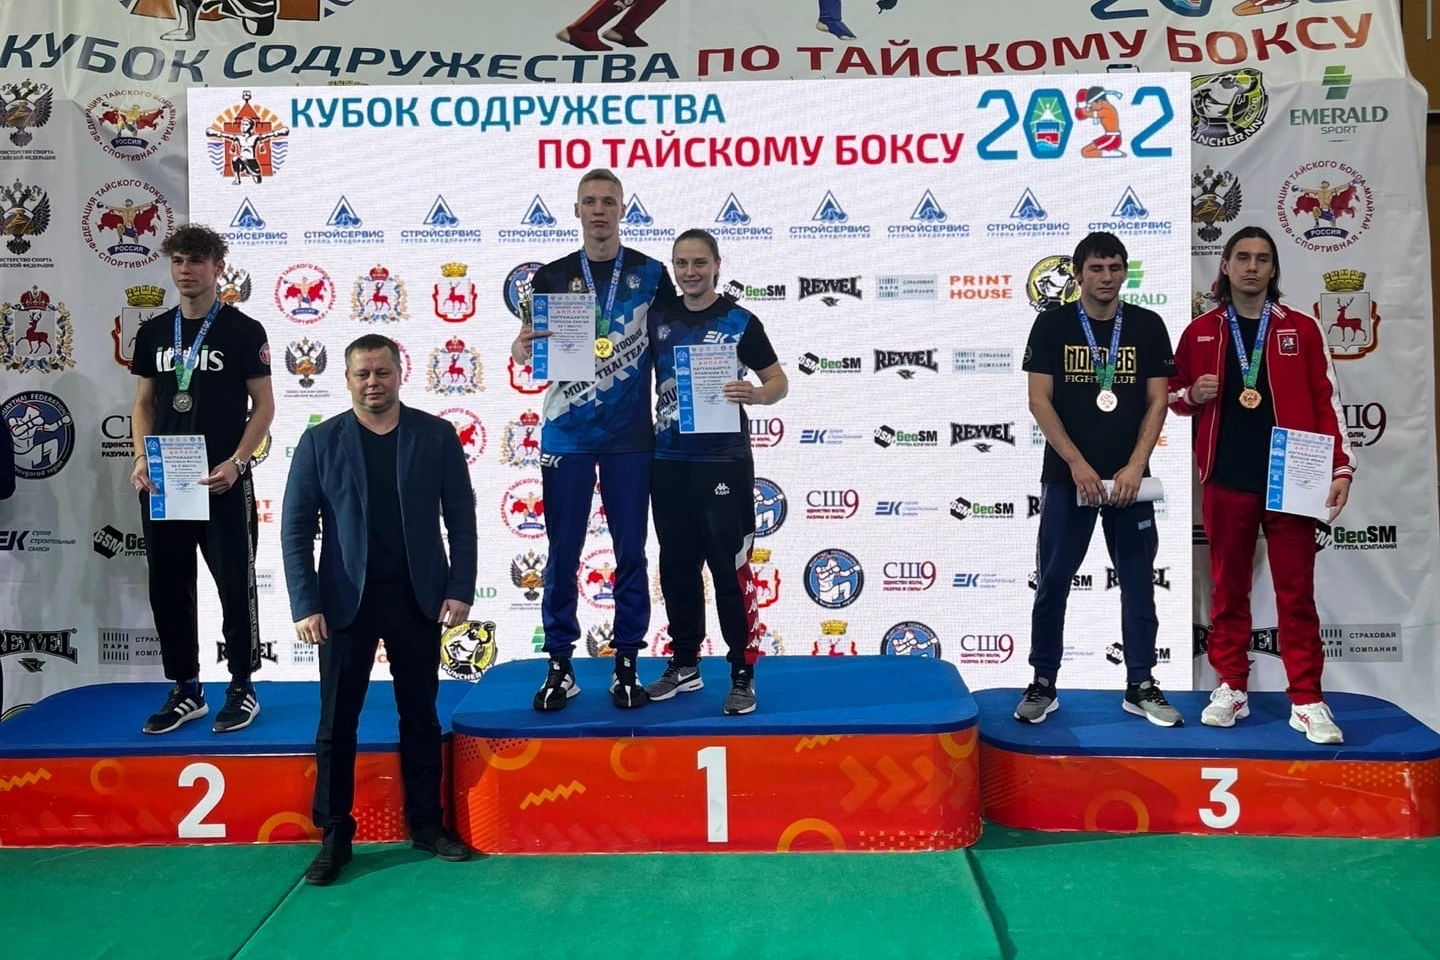 Студент Мининского стал чемпионом всероссийских соревнований по тайскому боксу